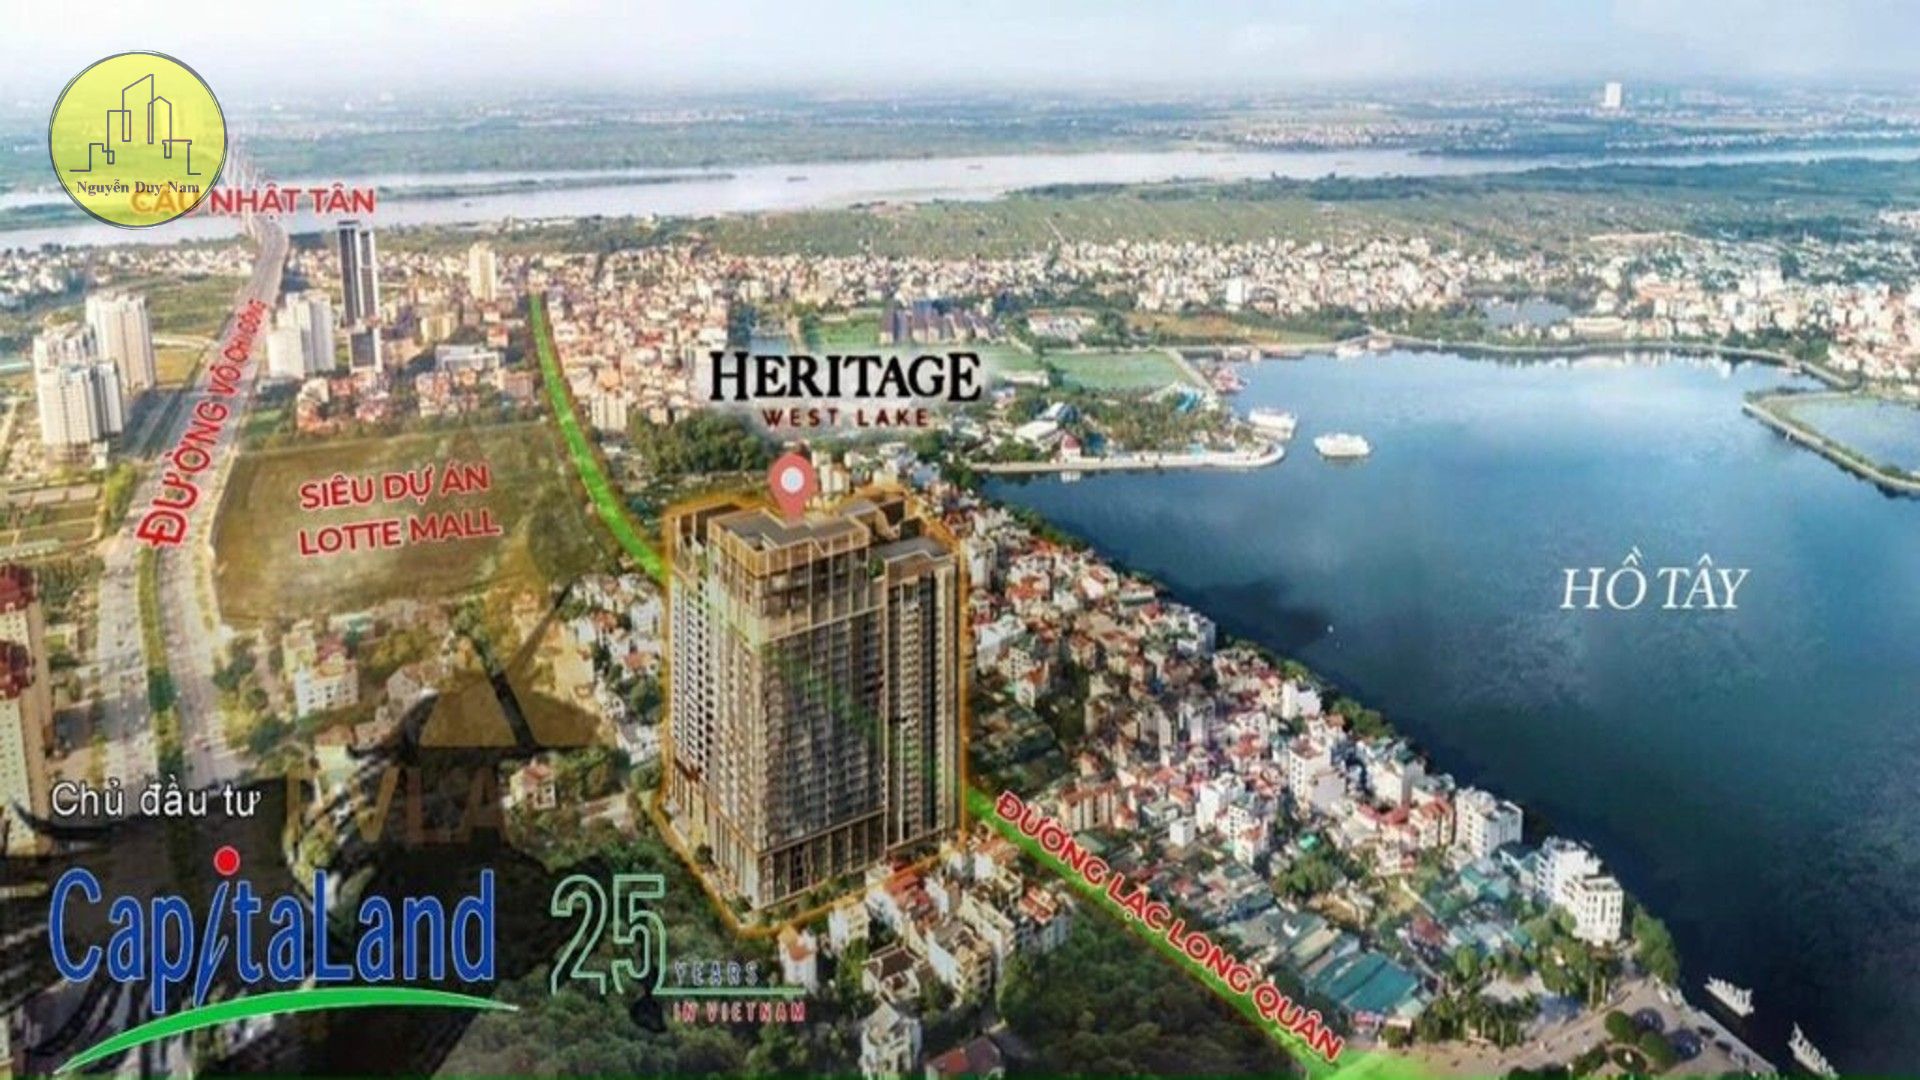 Heritage West Lake - các dự án của Capitaland tại Hà Nội